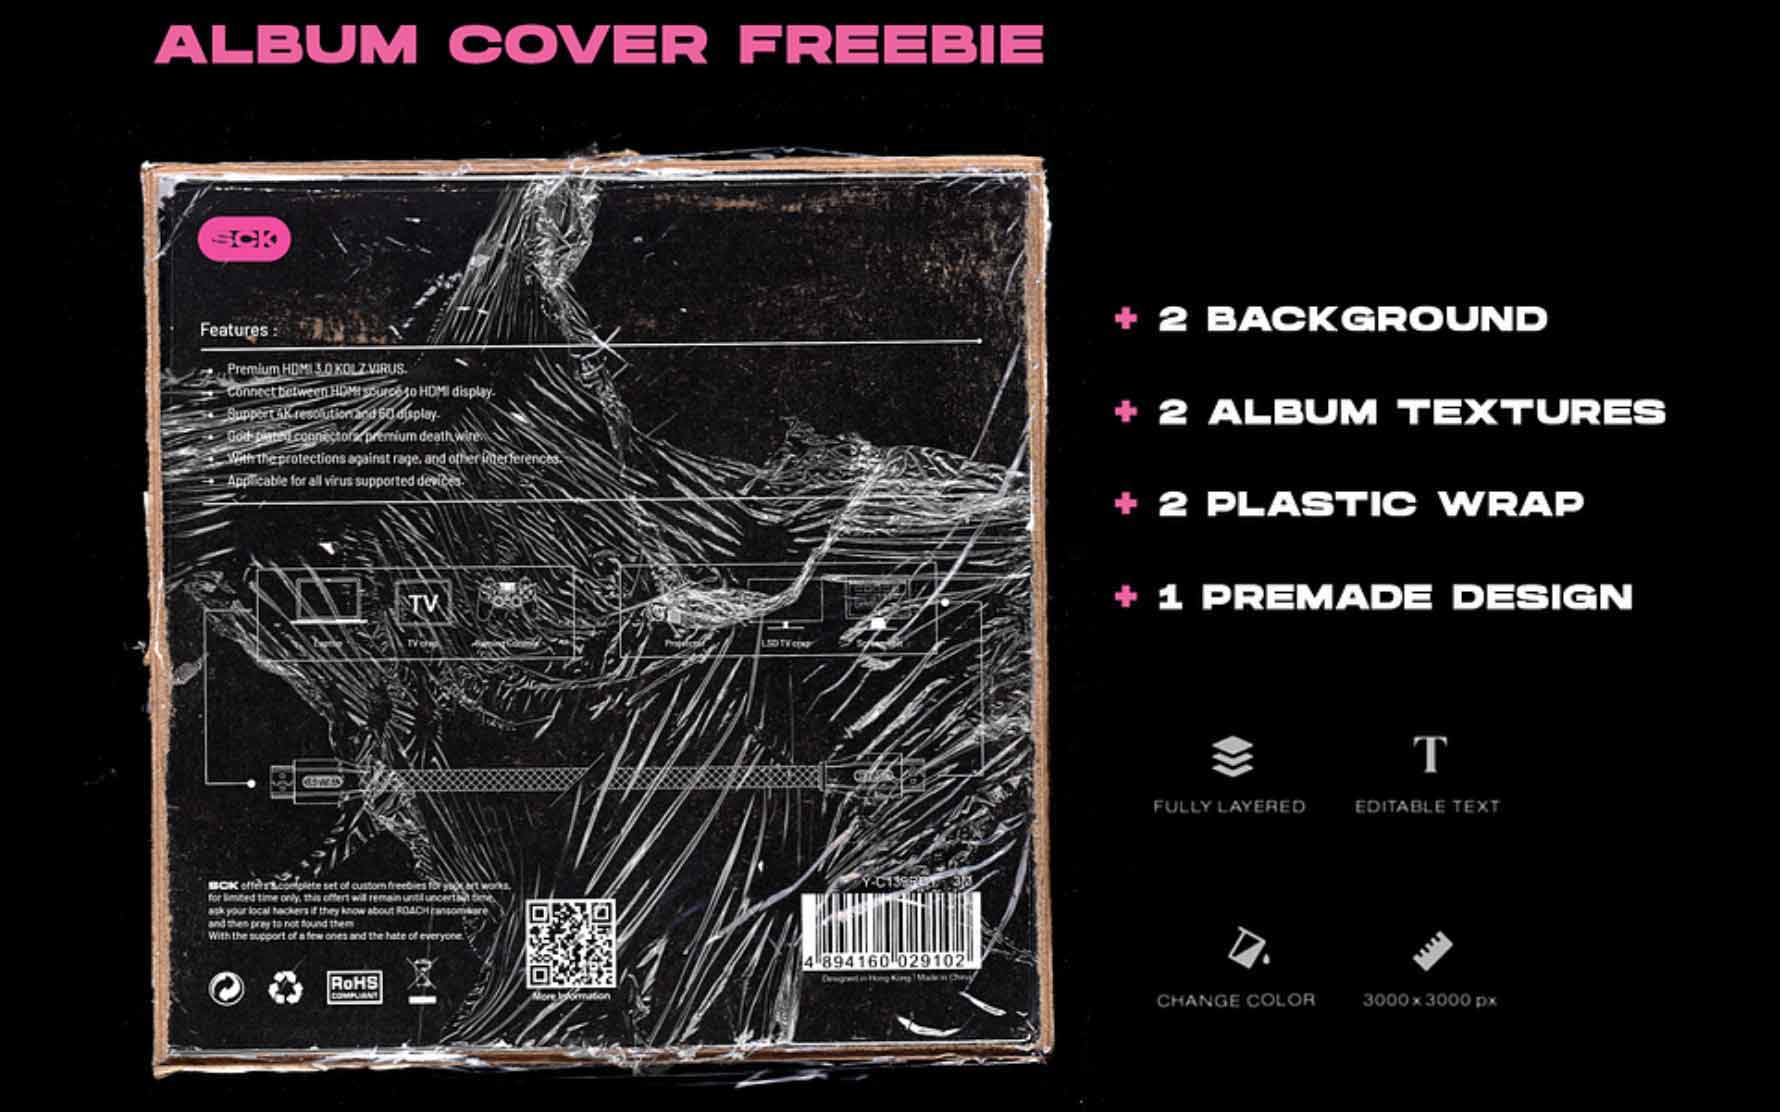 Retro album cover plastic wrap and textures